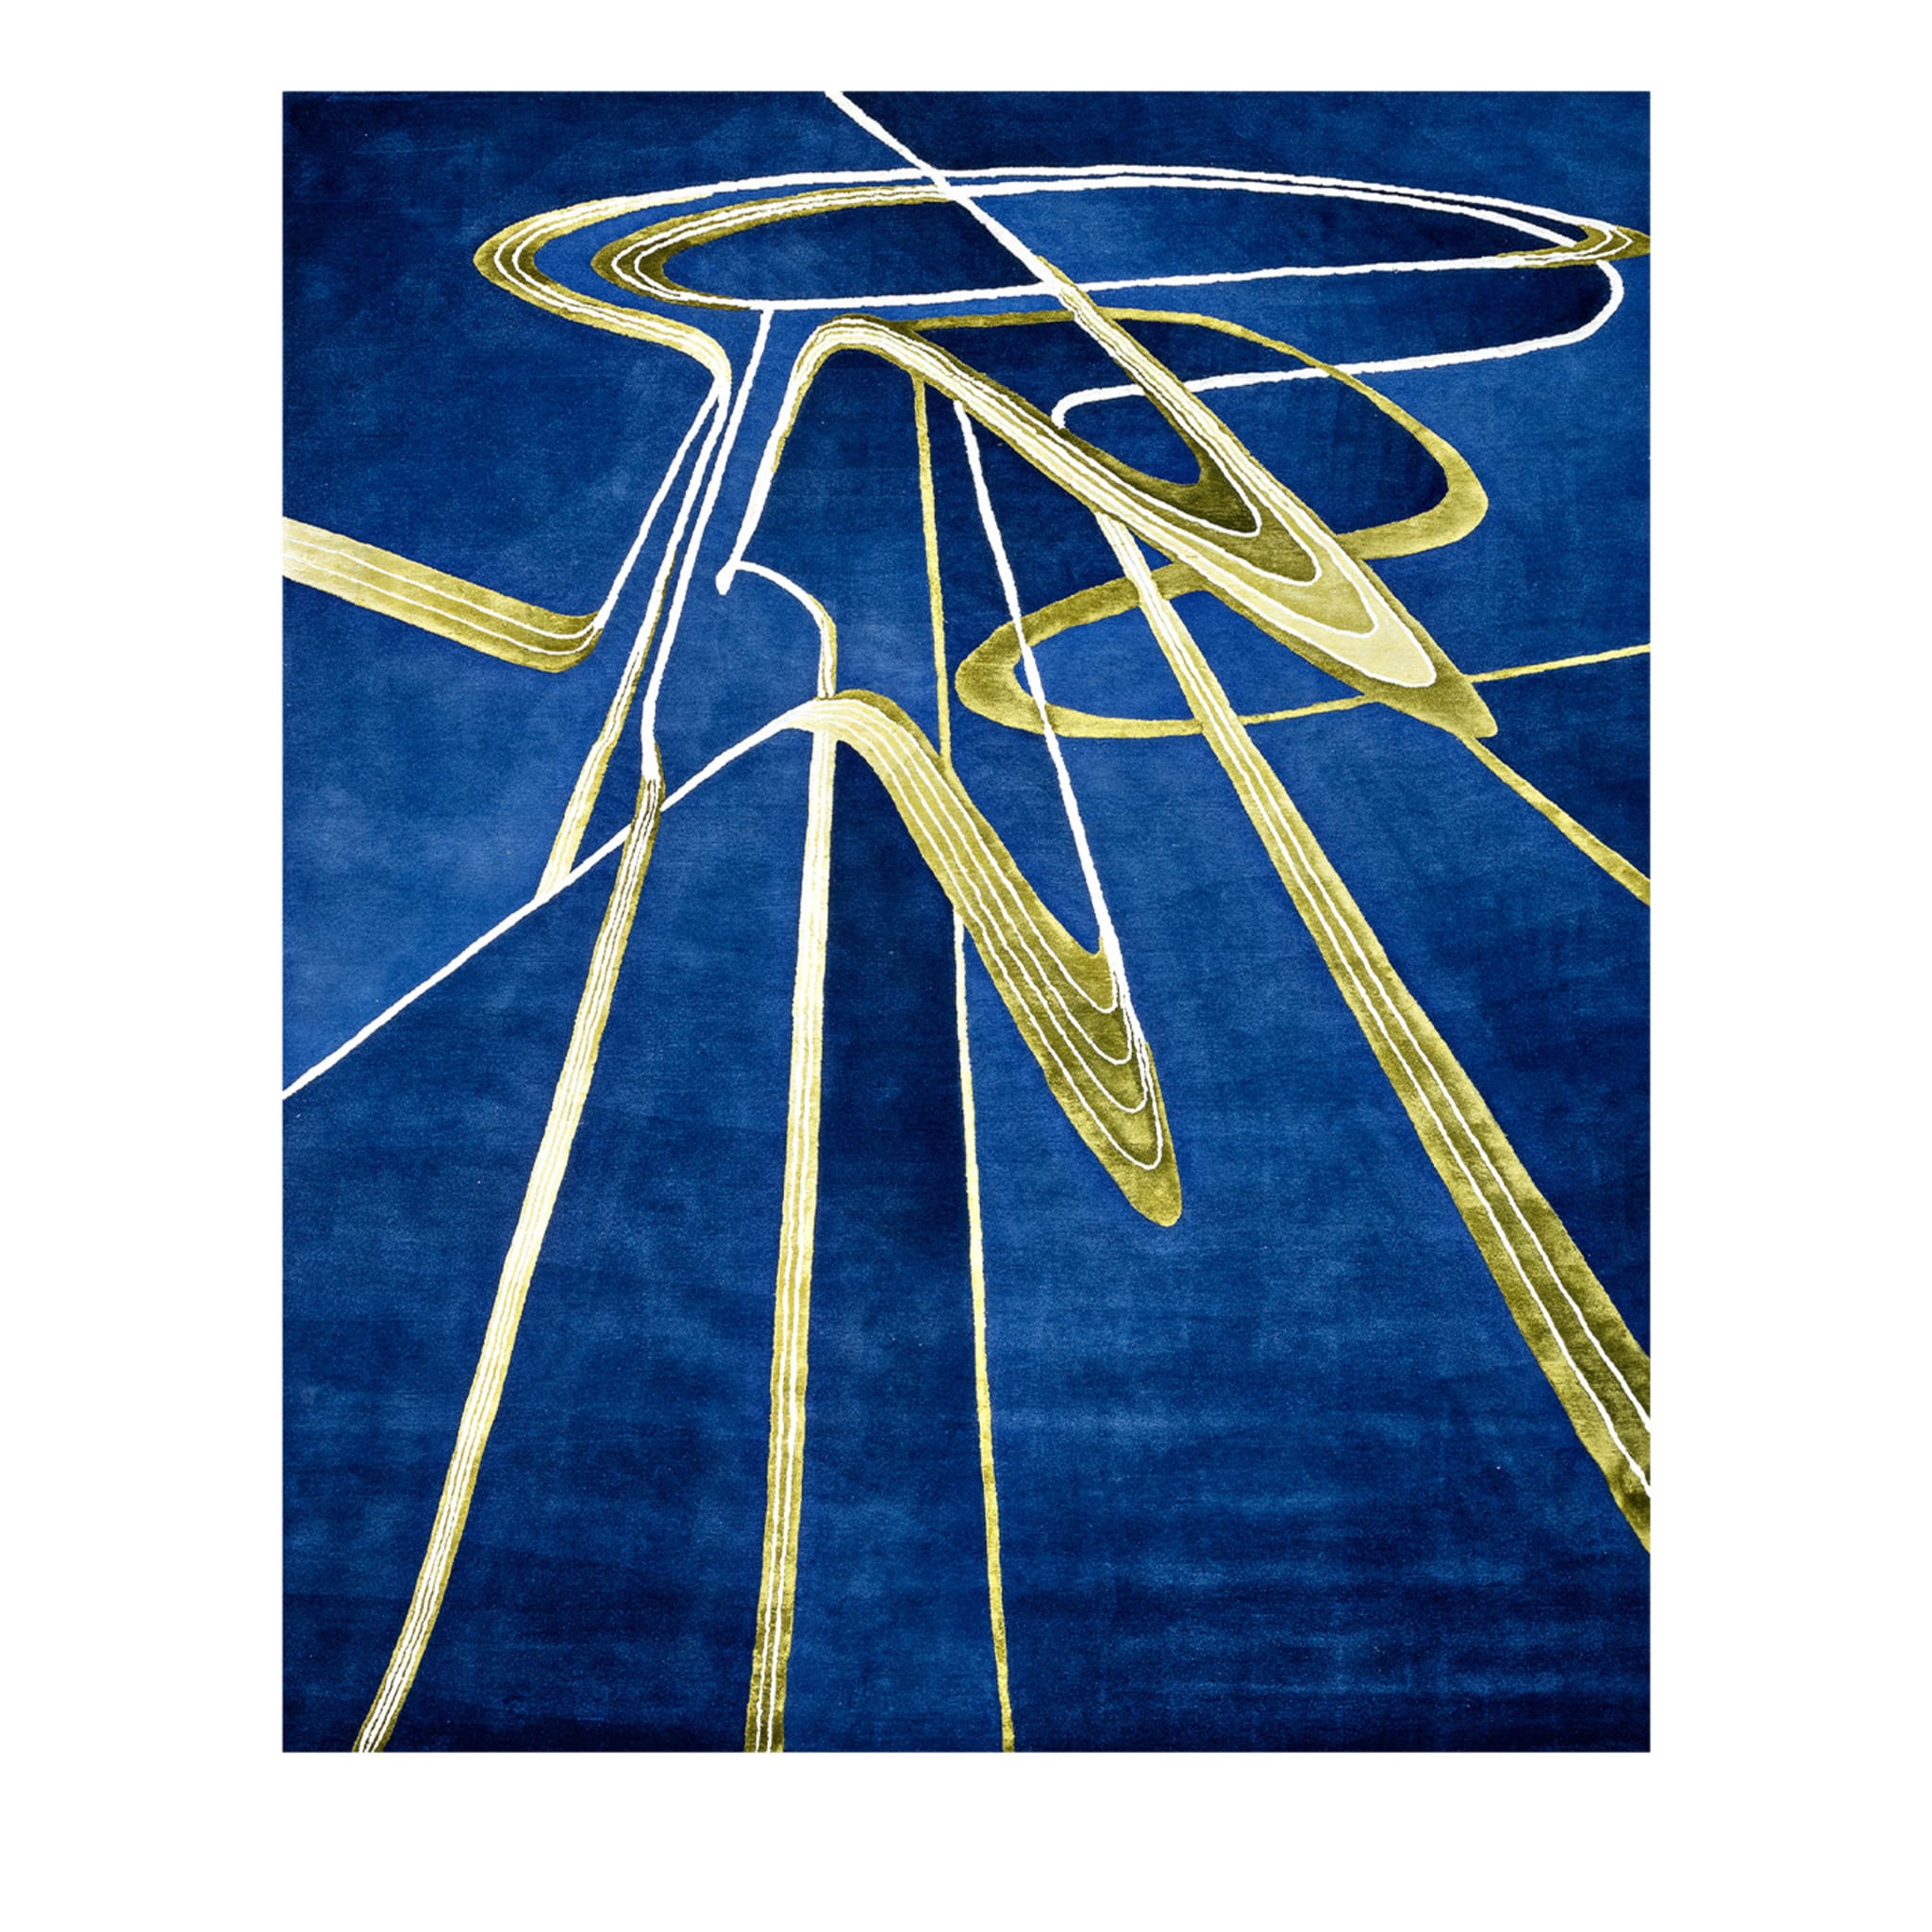 Prospettiva 02 Ver. Un tappeto di Zaha Hadid Architects - Vista principale